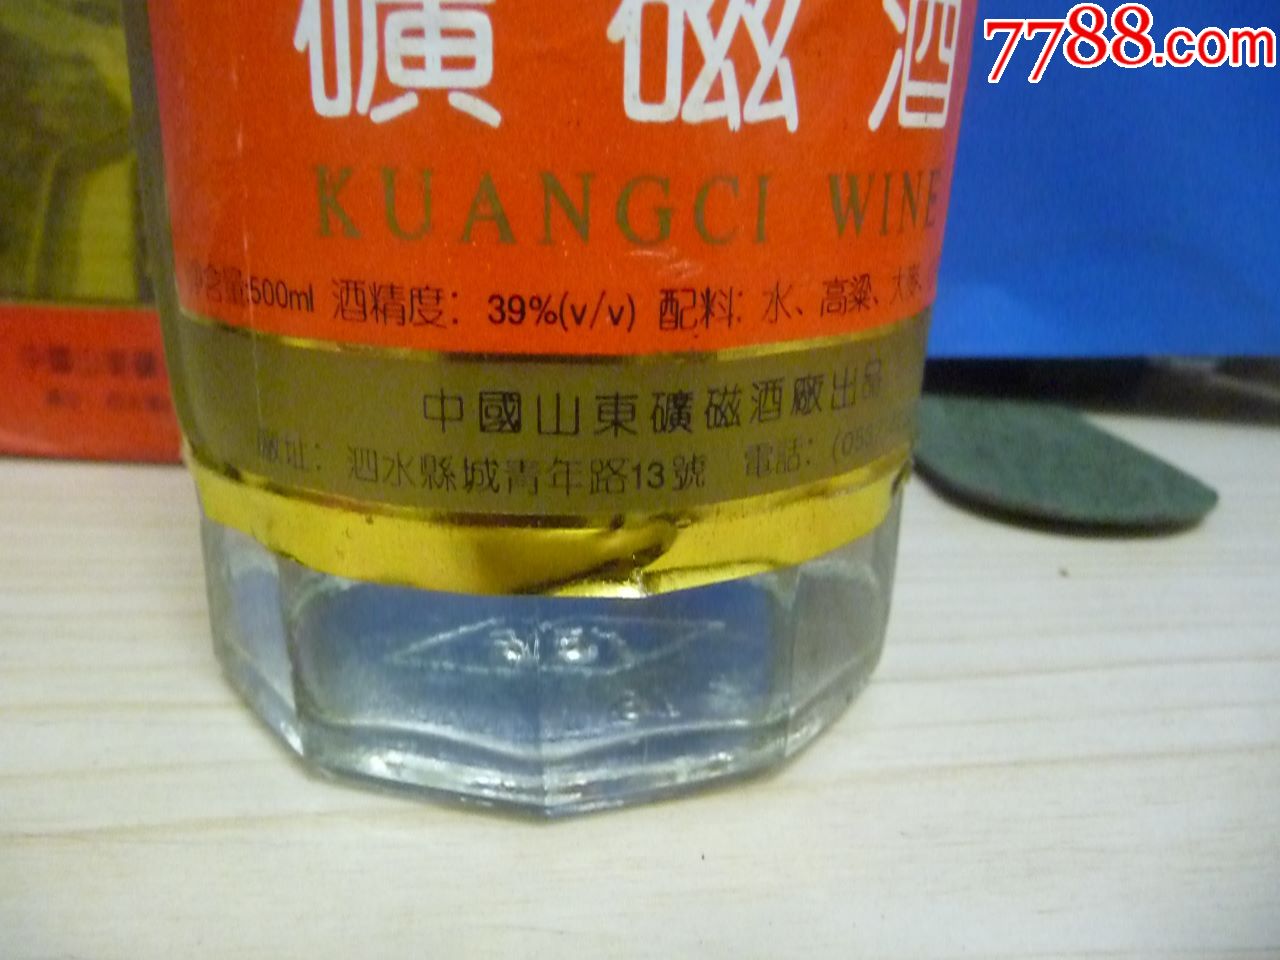 山东泗水出品—中国矿磁酒【39度,gb11859.1-8(一级】